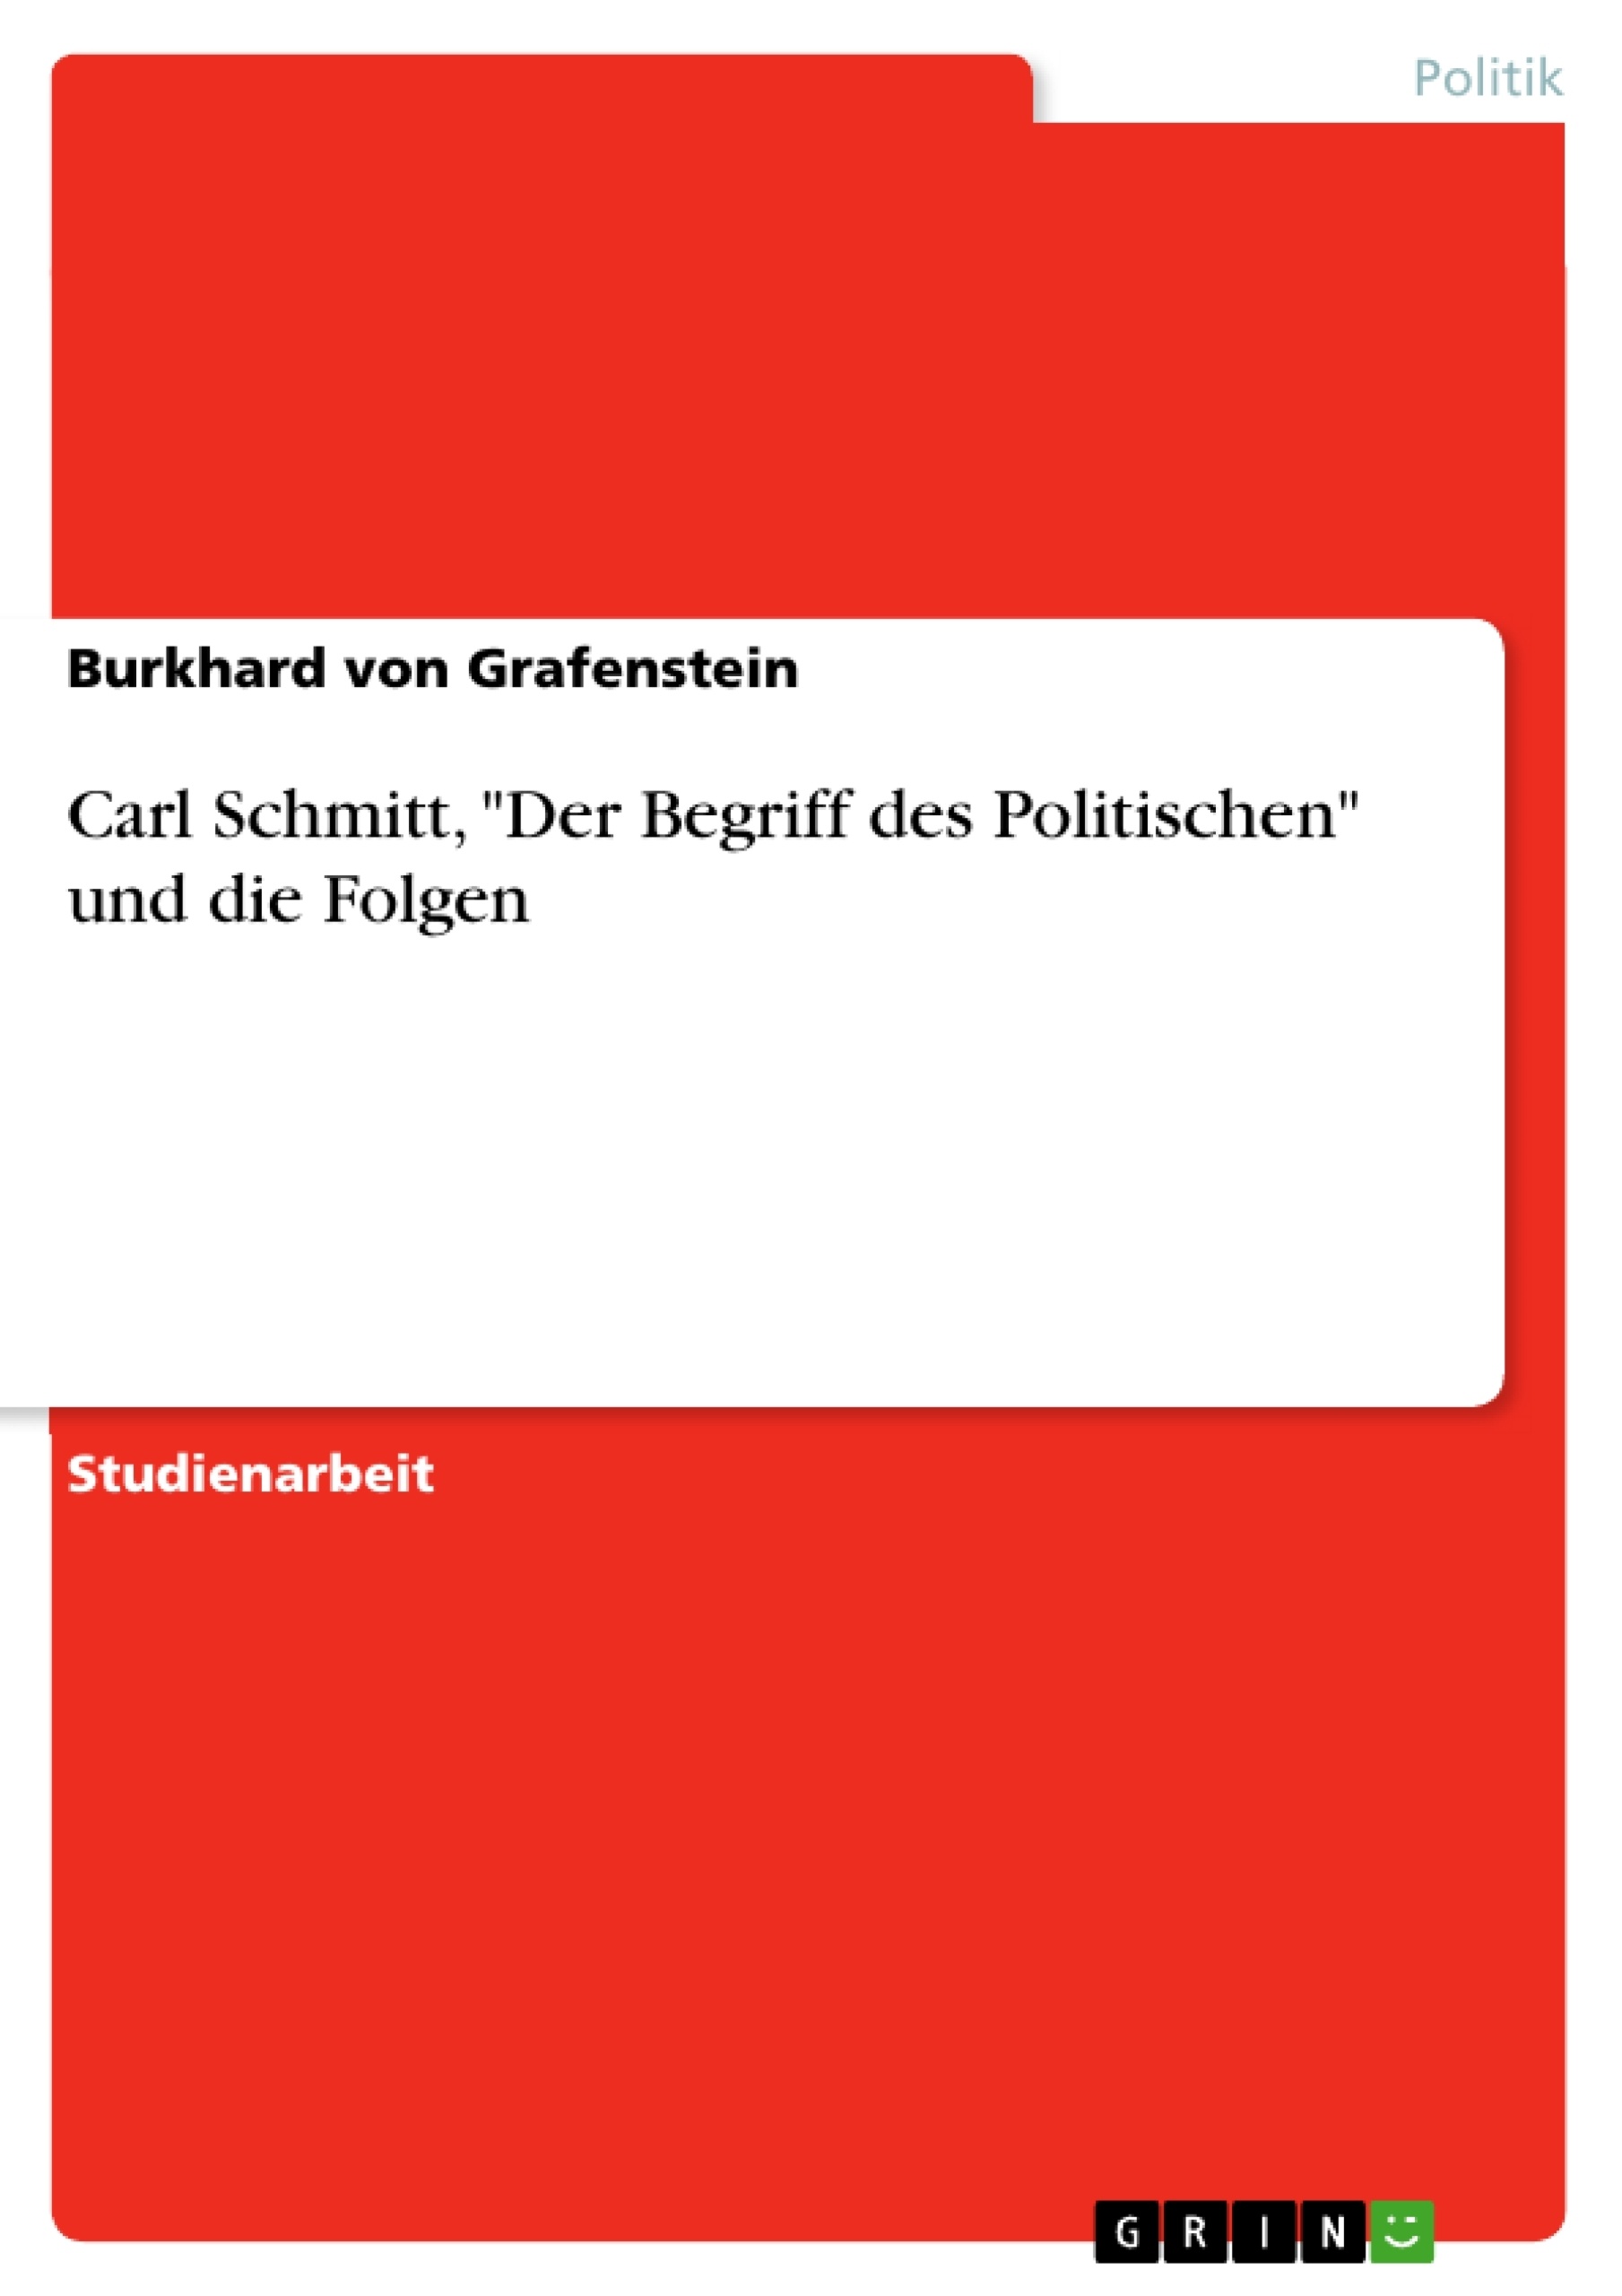 Title: Carl Schmitt, "Der Begriff des Politischen" und die Folgen